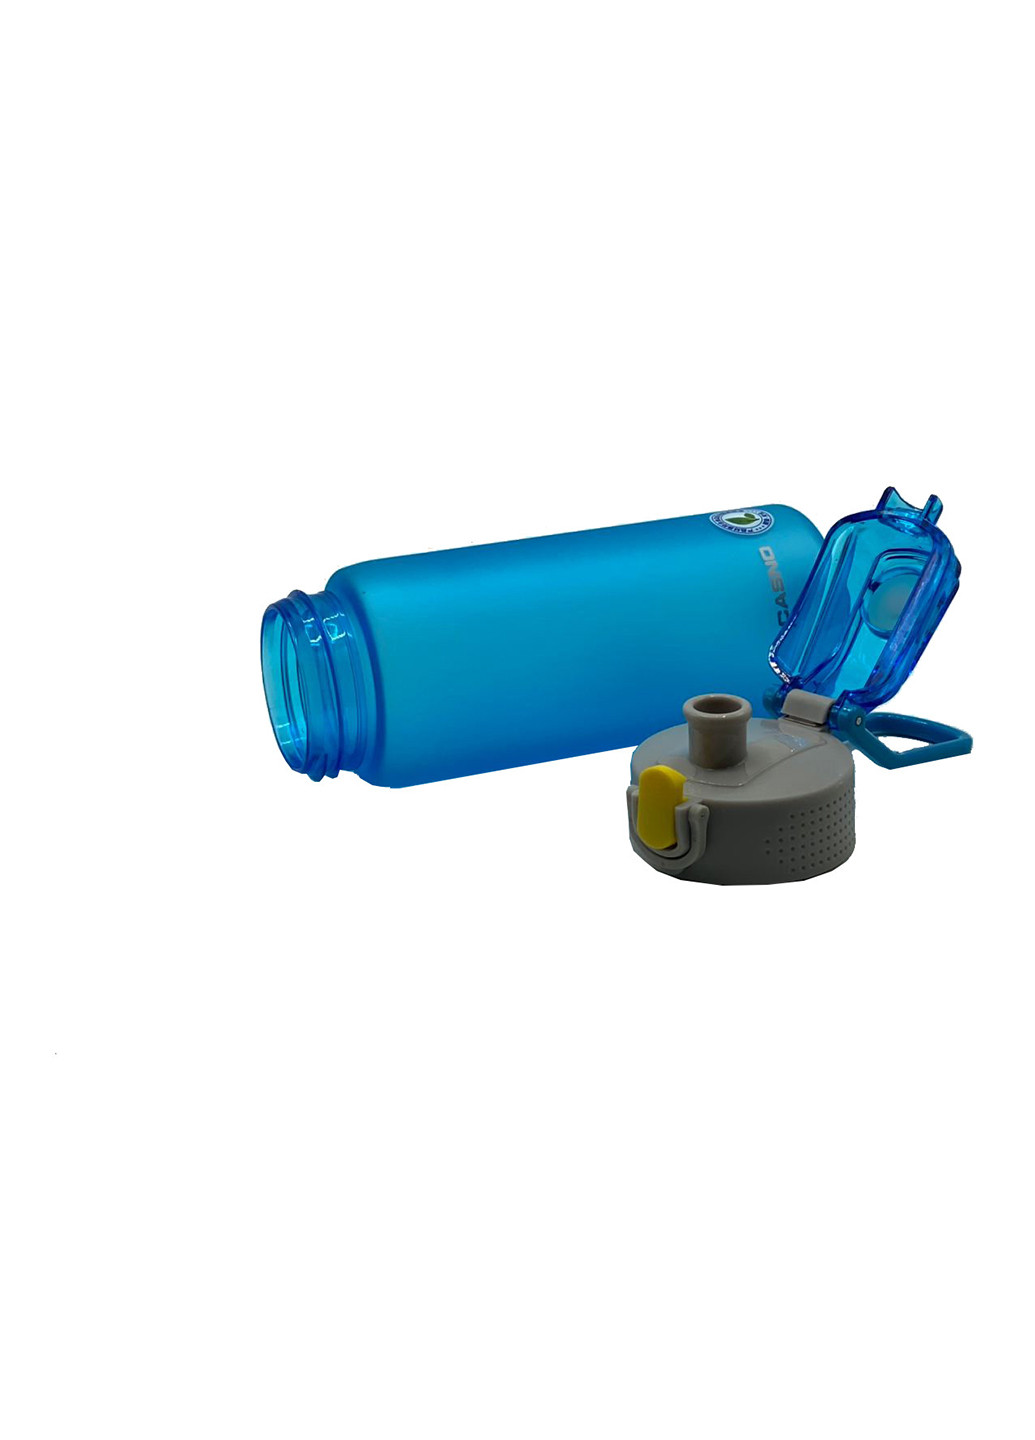 Спортивная бутылка для воды 550 Casno (242187893)